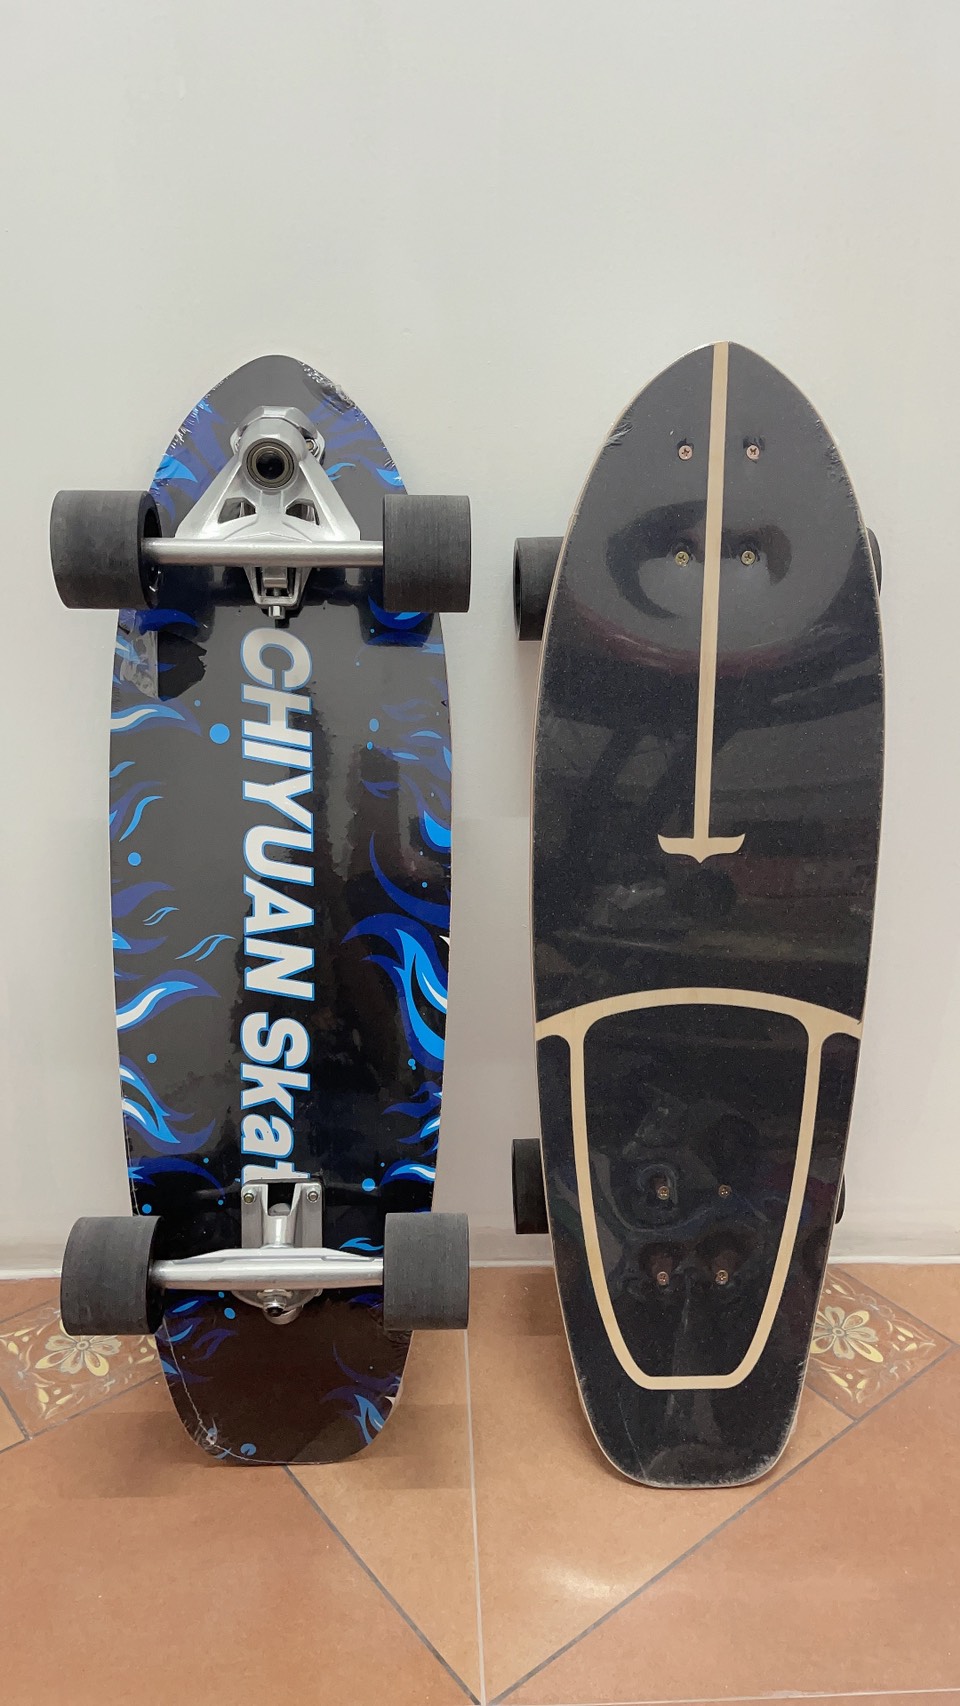 NEW GEELE สเก็ตบอร์ด Surfskate Surf Skateboards CX7 30 นิ้ว  เซิร์ฟสเก็ต แข็งแรง ทนทานสูง